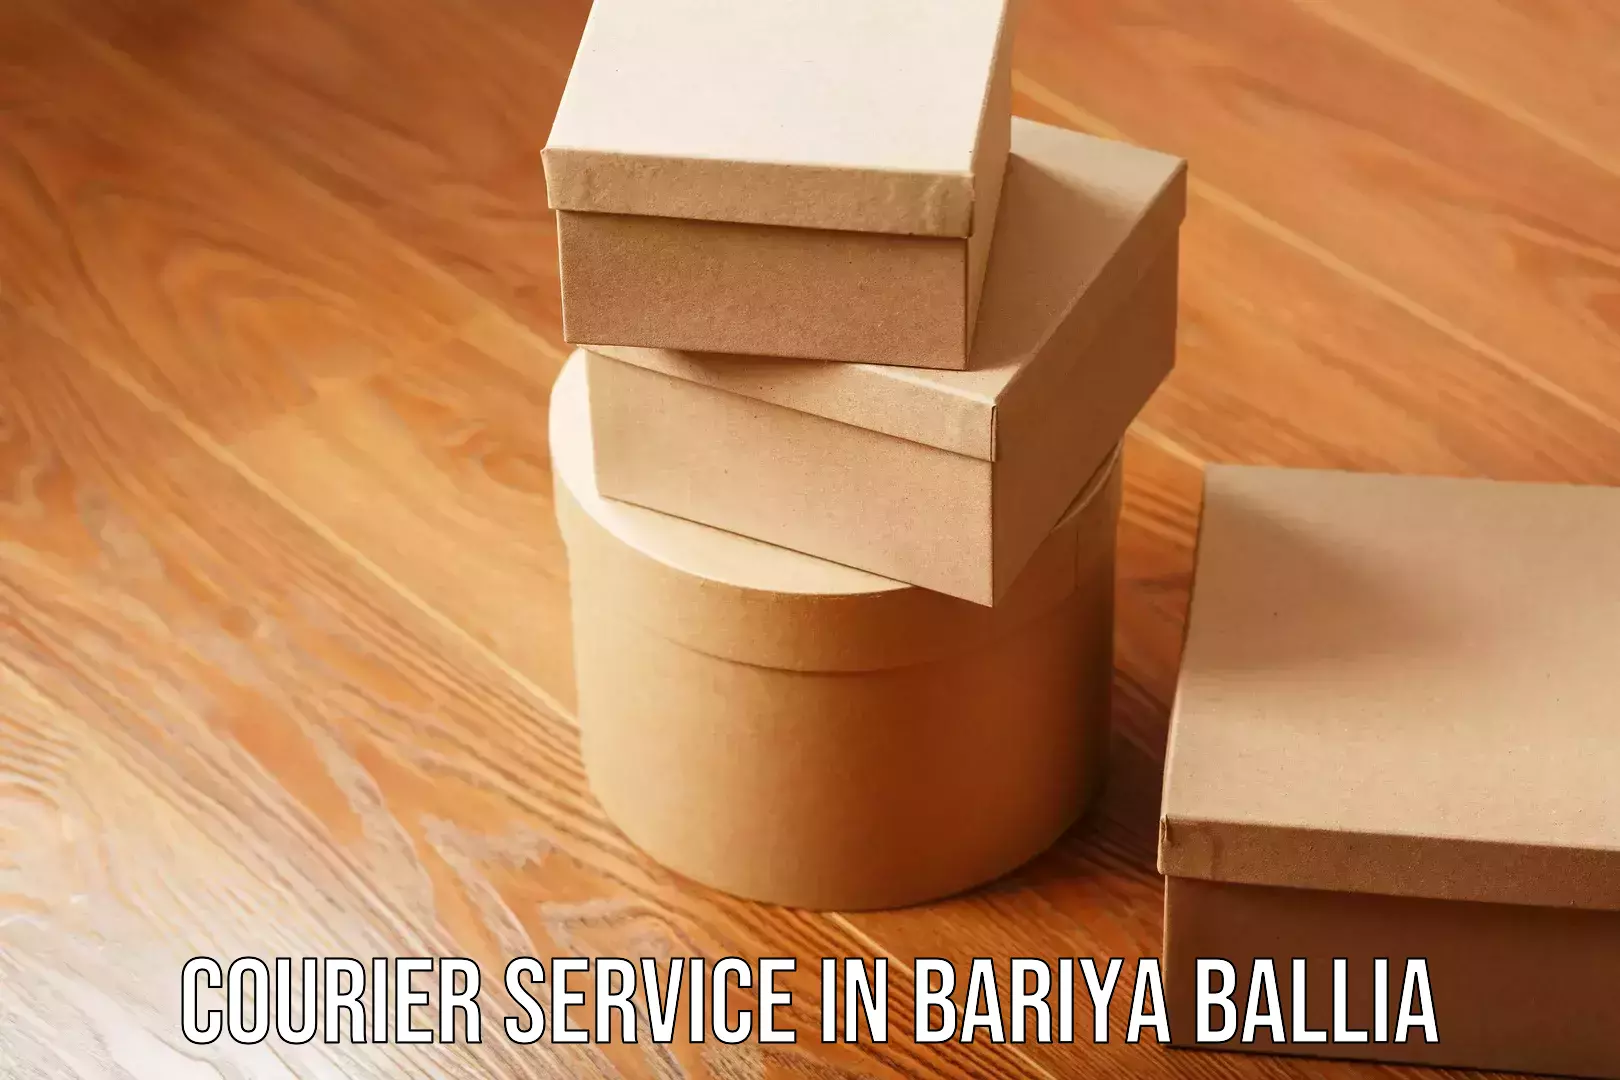 Smart courier technologies in Bariya Ballia